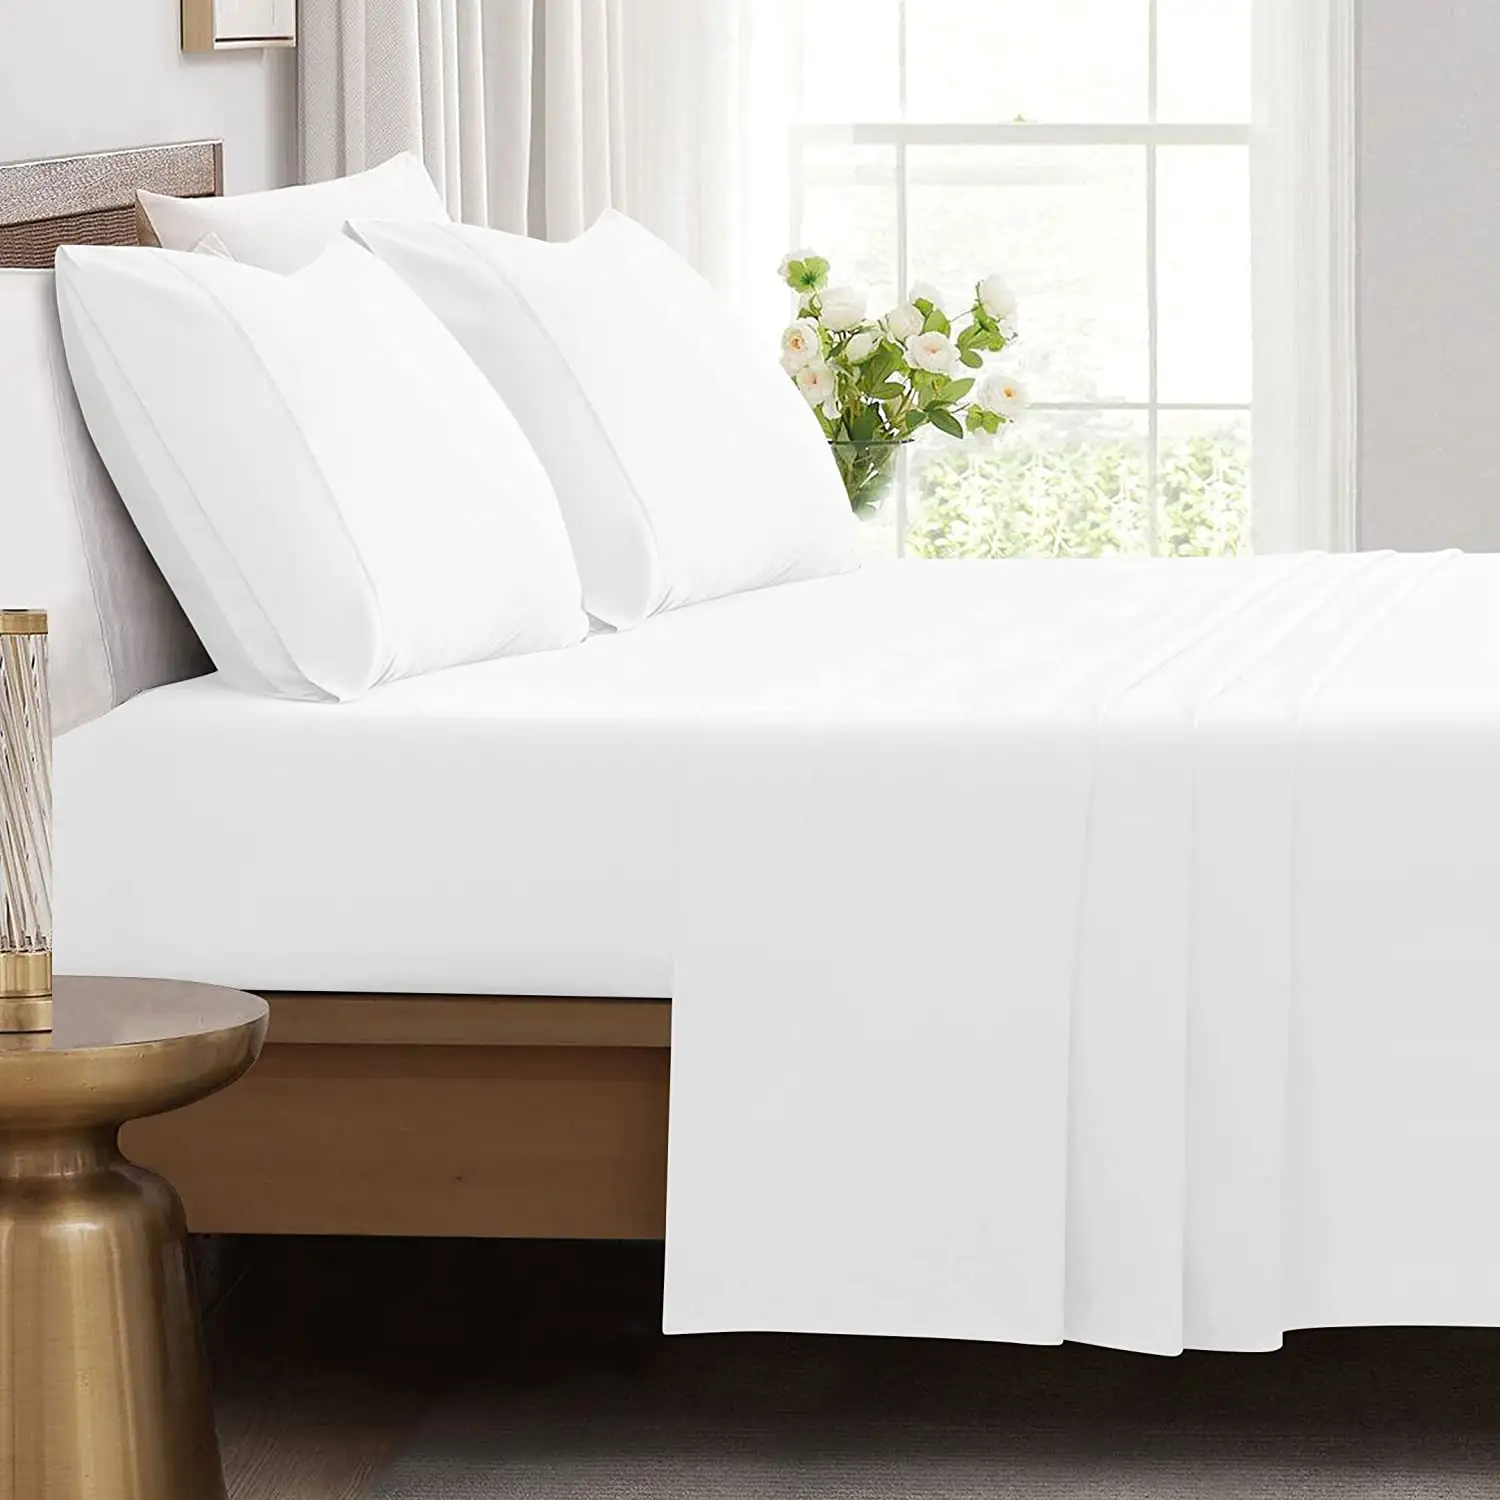 ผ้าปูที่นอนโรงแรมไมโครไฟเบอร์สีขาวผ้าปูที่นอนแบนและผ้าปูที่นอนเข้ารูปผ้า100% โพลีเอสเตอร์ทอลายทาง40 4ชิ้นจากอเมริกา